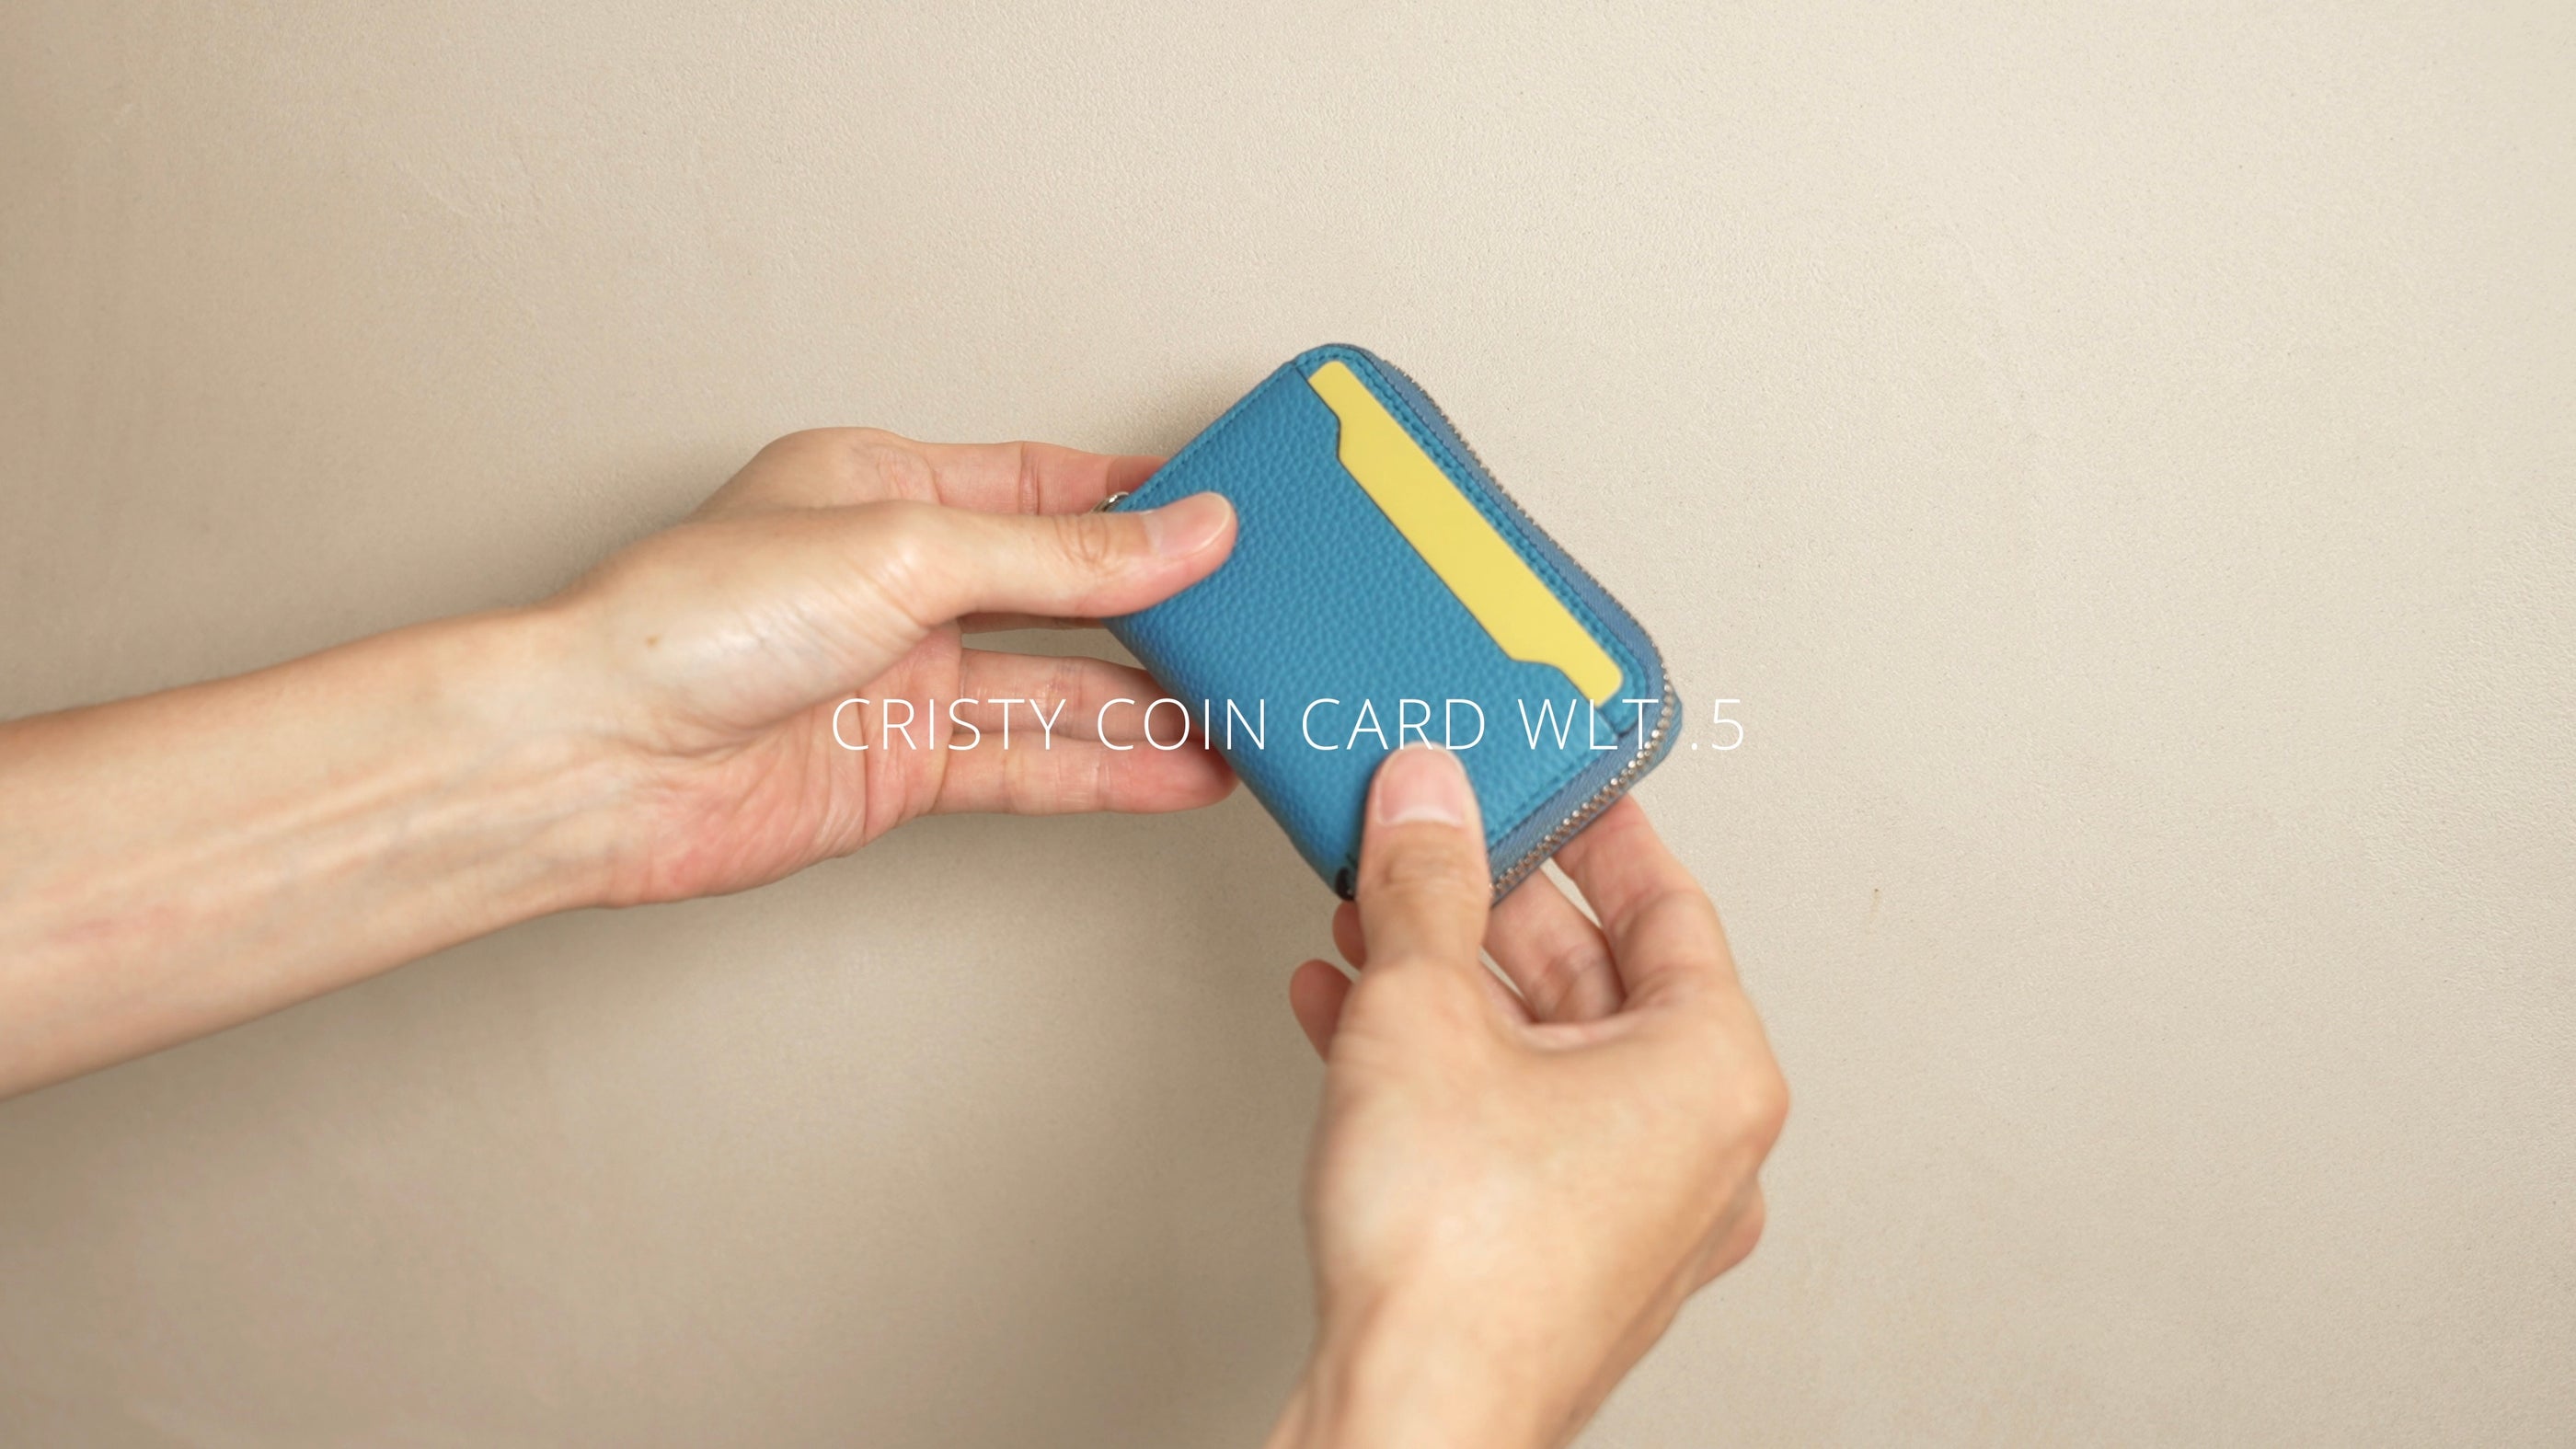 CRISTY COIN CARD WLT .5 クリスティコインカードウォレット キャッシュレス サイフ さいふ 財布 ラウンドファスナー 革 レザー イッチ ITTI メンズ レディース